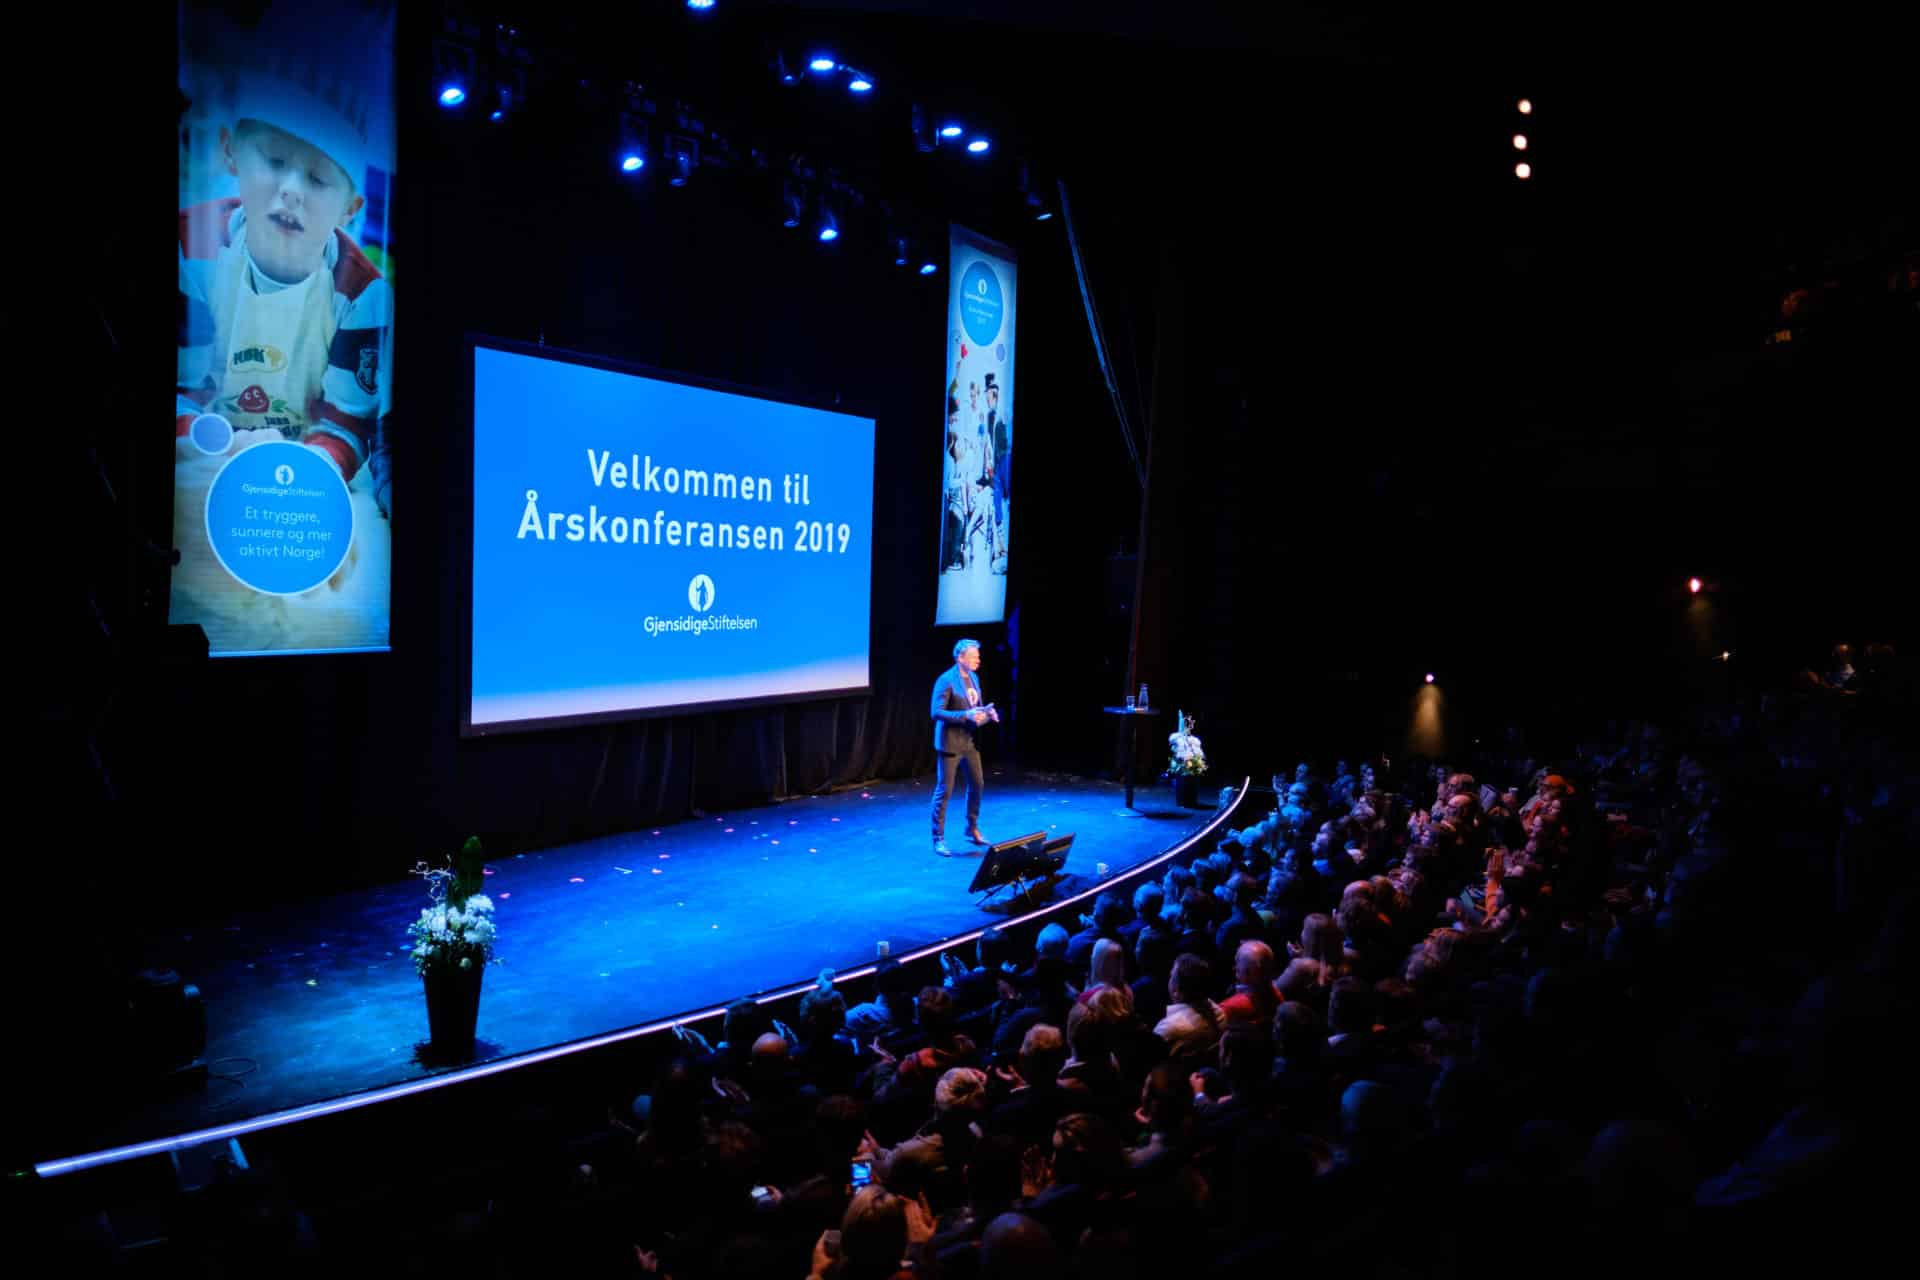 Bilde av Lars Erik Mørk på scenen under årskonferansen 2019